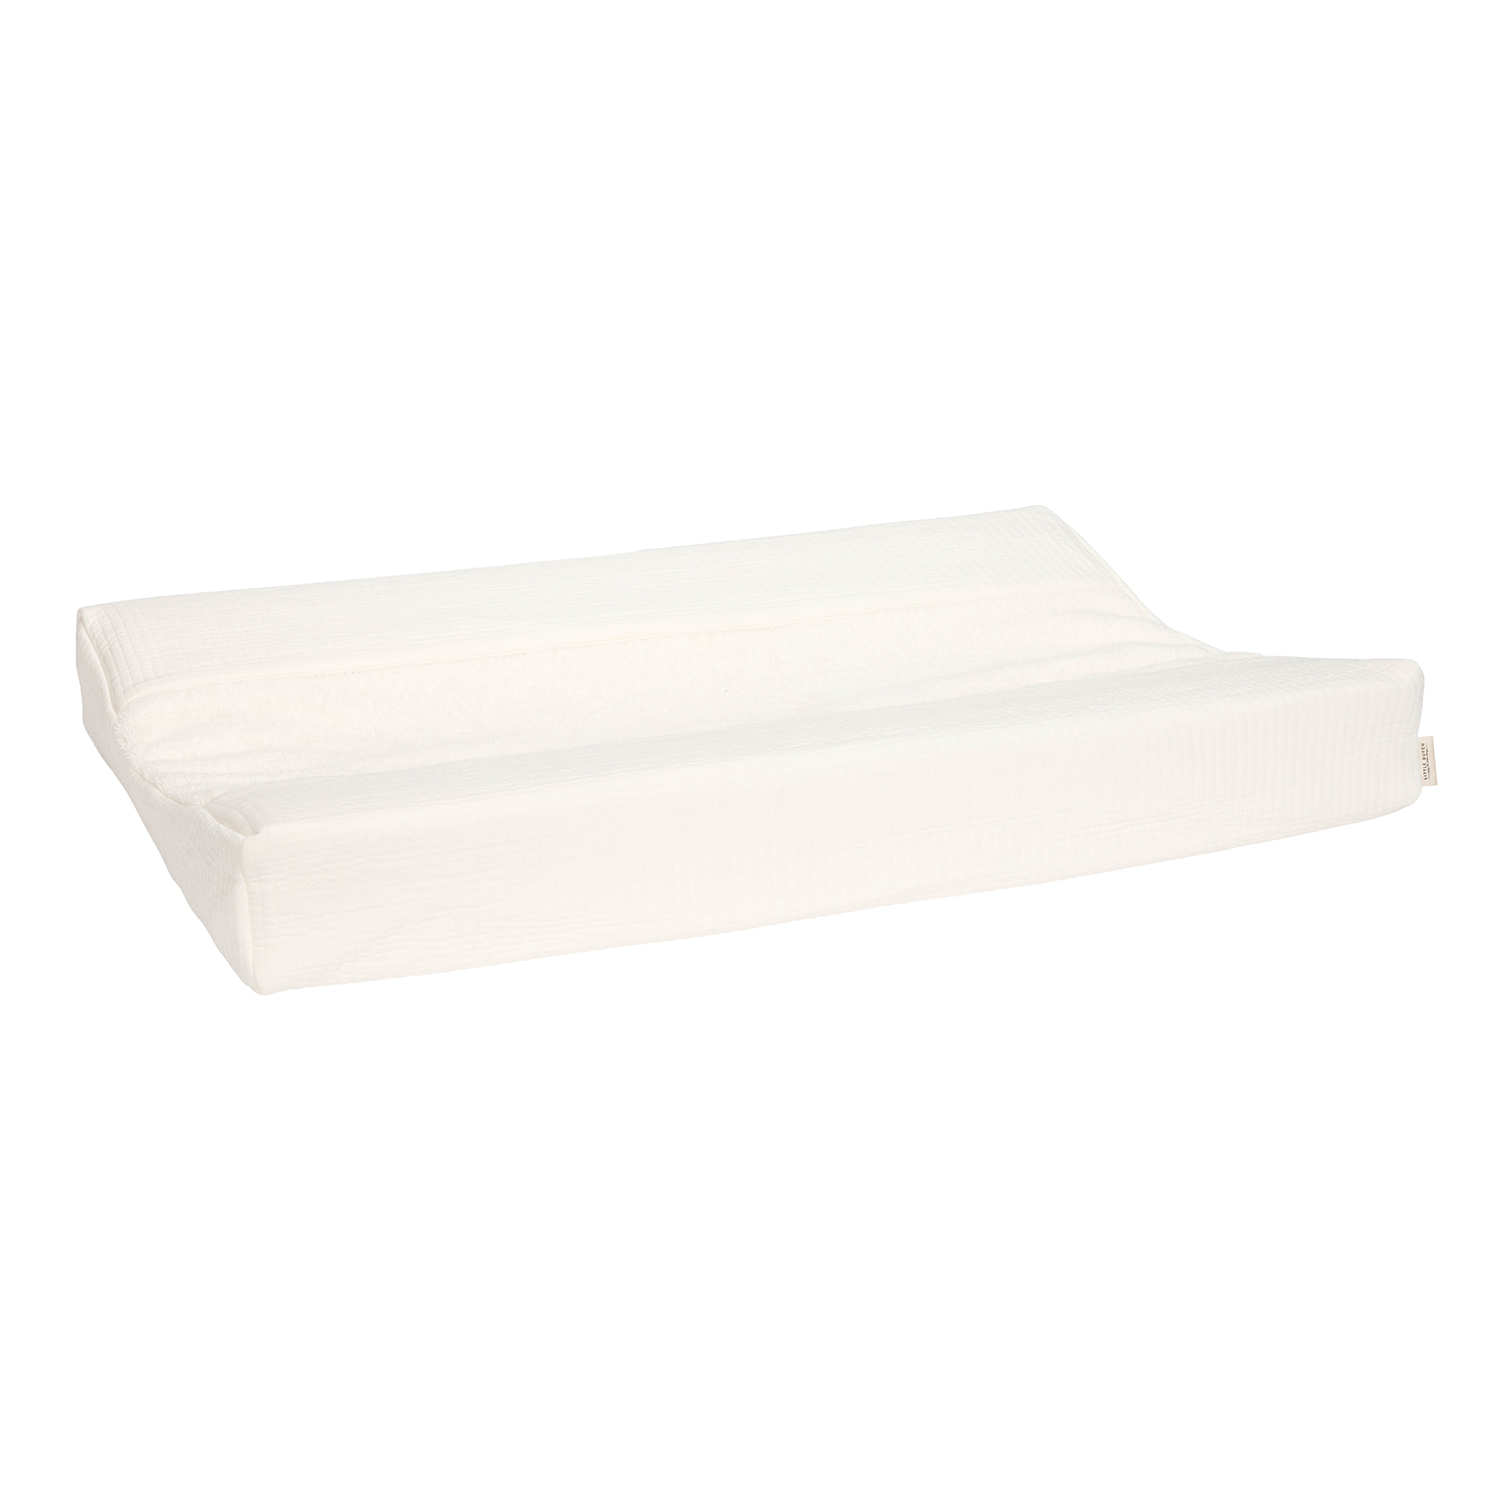 Wickelauflagenbezug Pure soft weiß (45x70 cm)